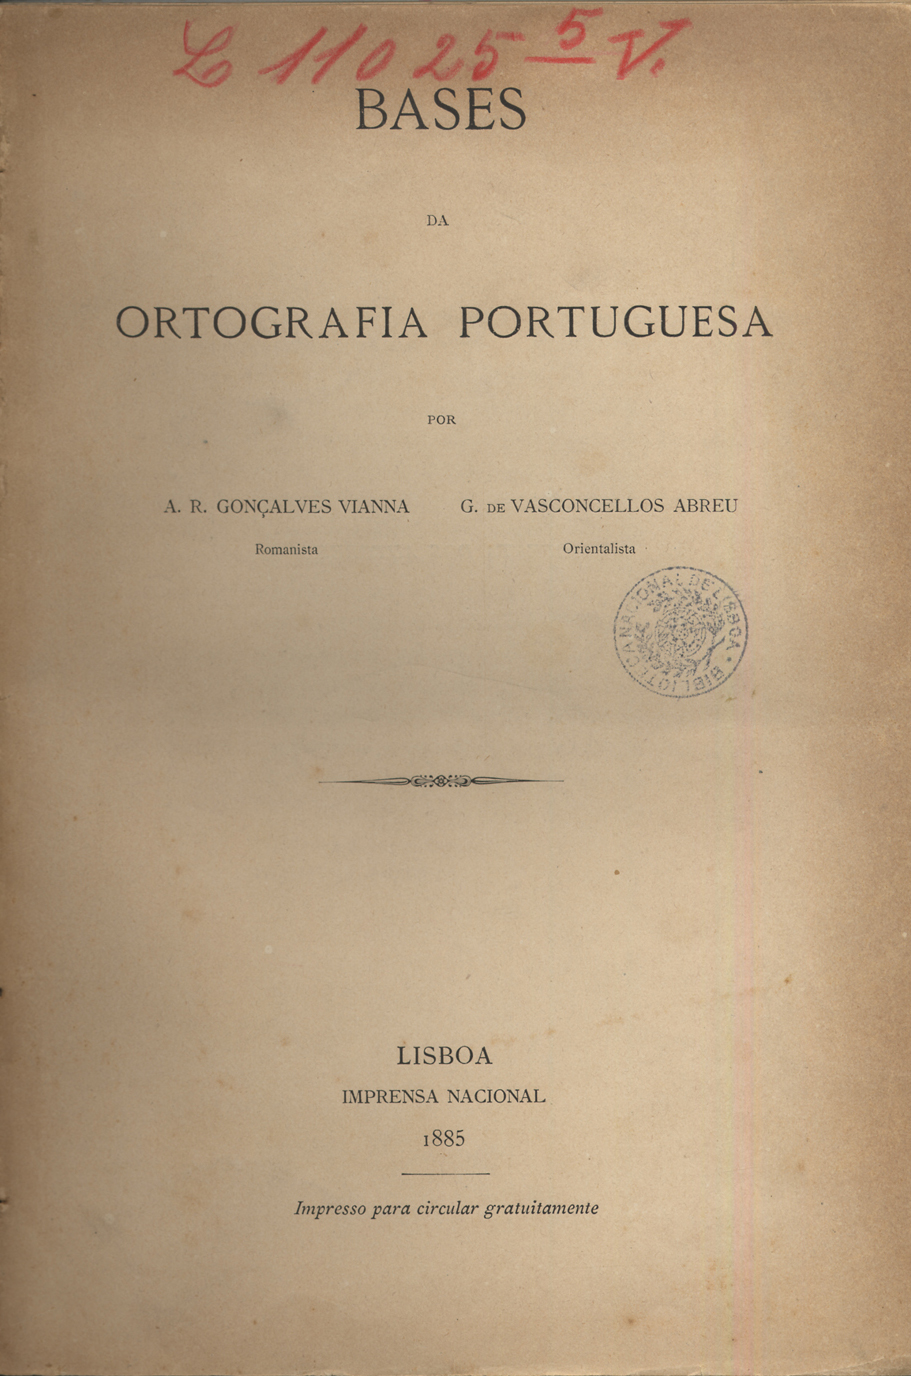 Cover of Bases da ortografia portuguesa / A. R. Gonçalves Vianna, G. de Vasconcelos Abreu. - Lisboa : Imprensa Nacional, 1885. - 14 p. ; 23 cm